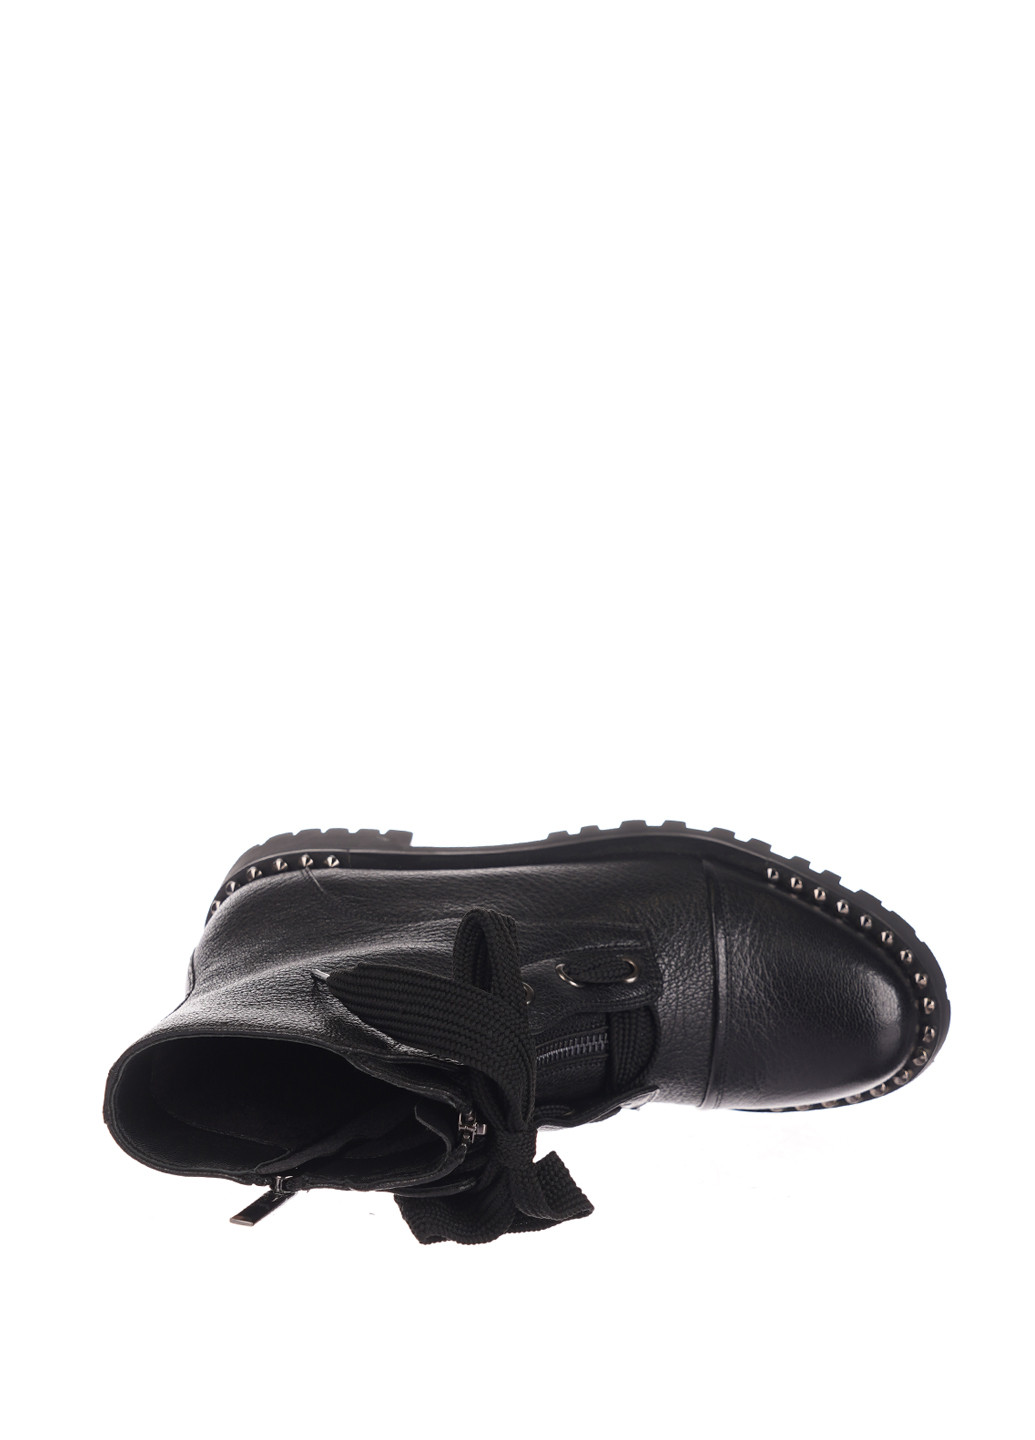 Осенние ботинки Luciano Carvari люверсы, с заклепками, завязки